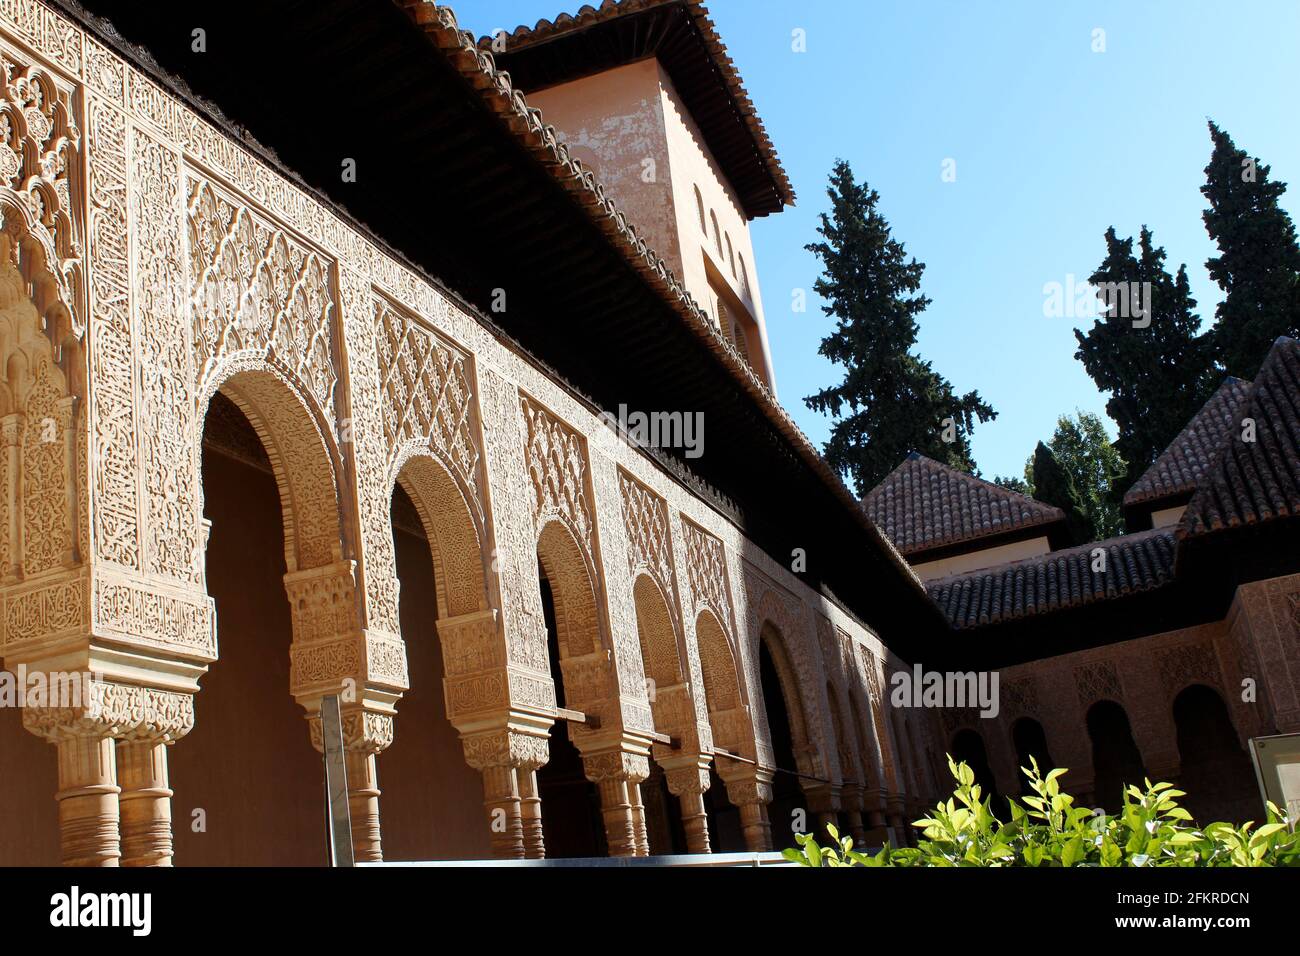 Dettagli sull'architettura islamica all'Alhambra di Granada, Spagna Foto Stock